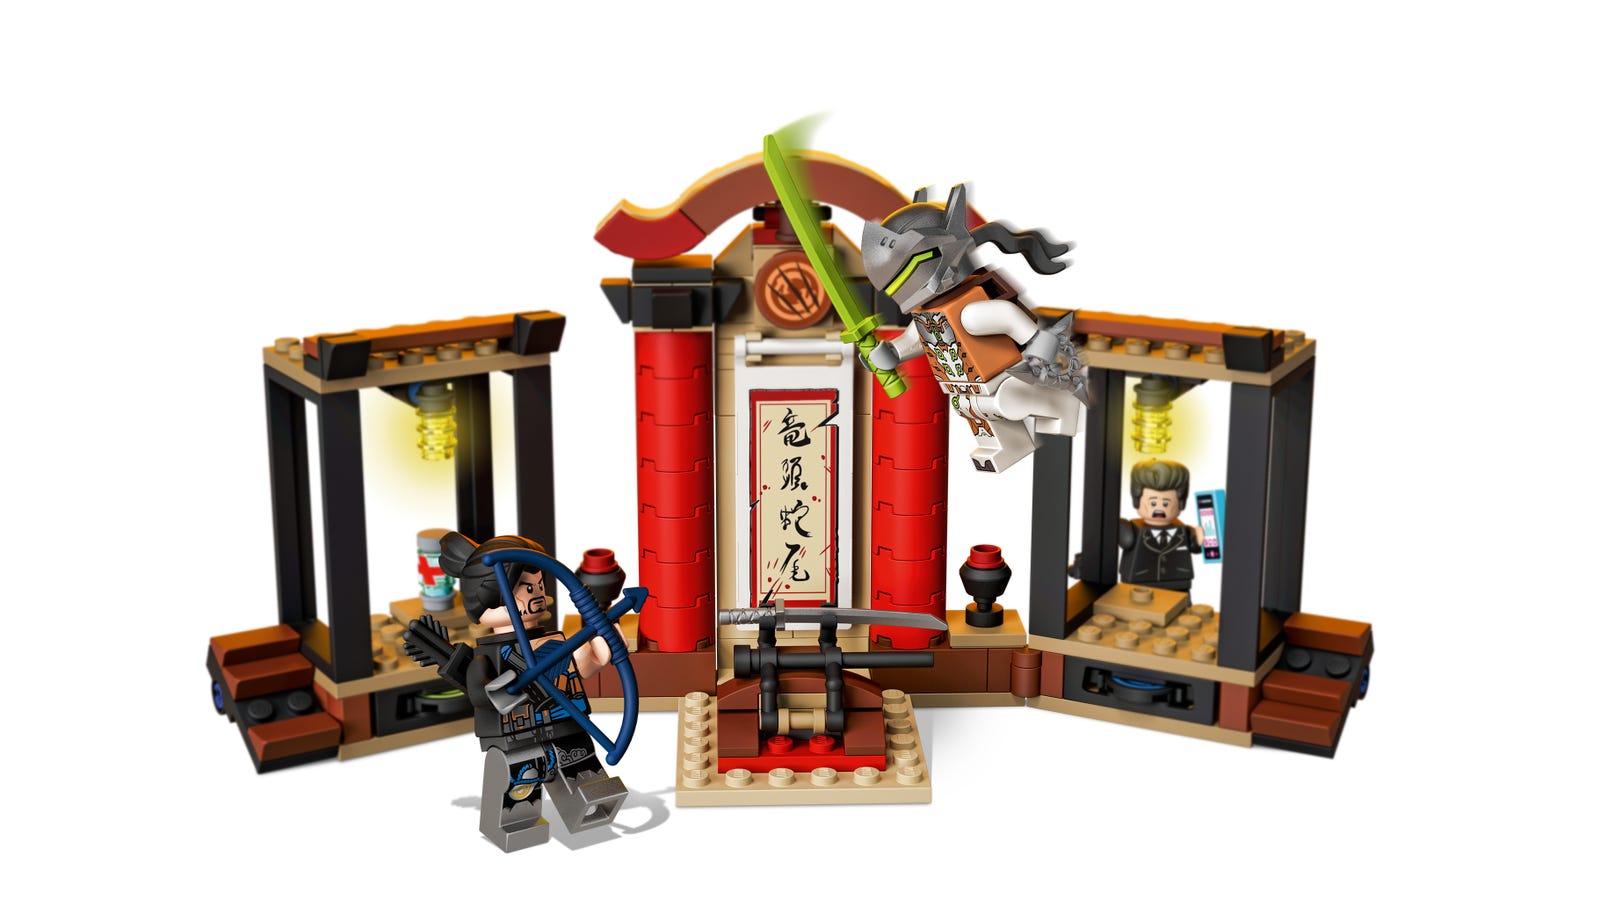 Lego Overwatch Hanzo vs Genji 75971